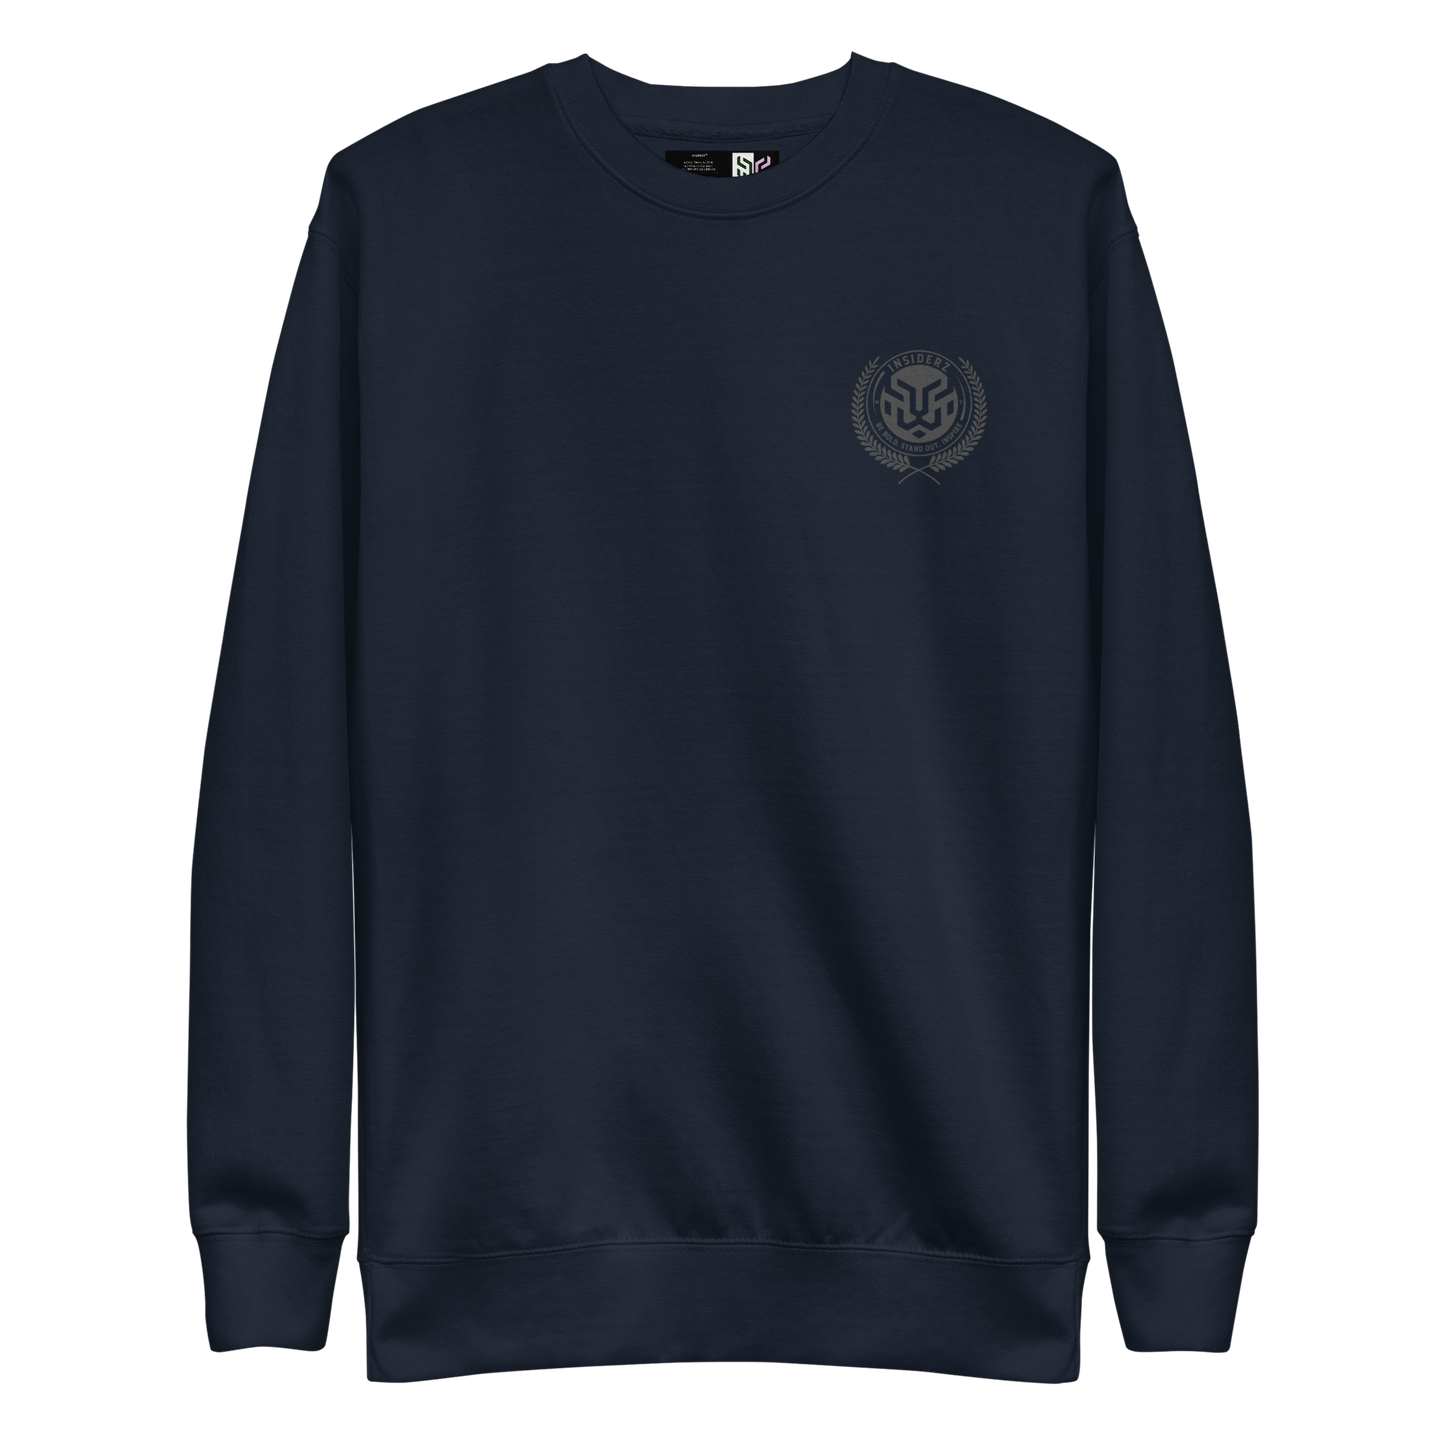 Leo Unisex Premium Sweatshirt